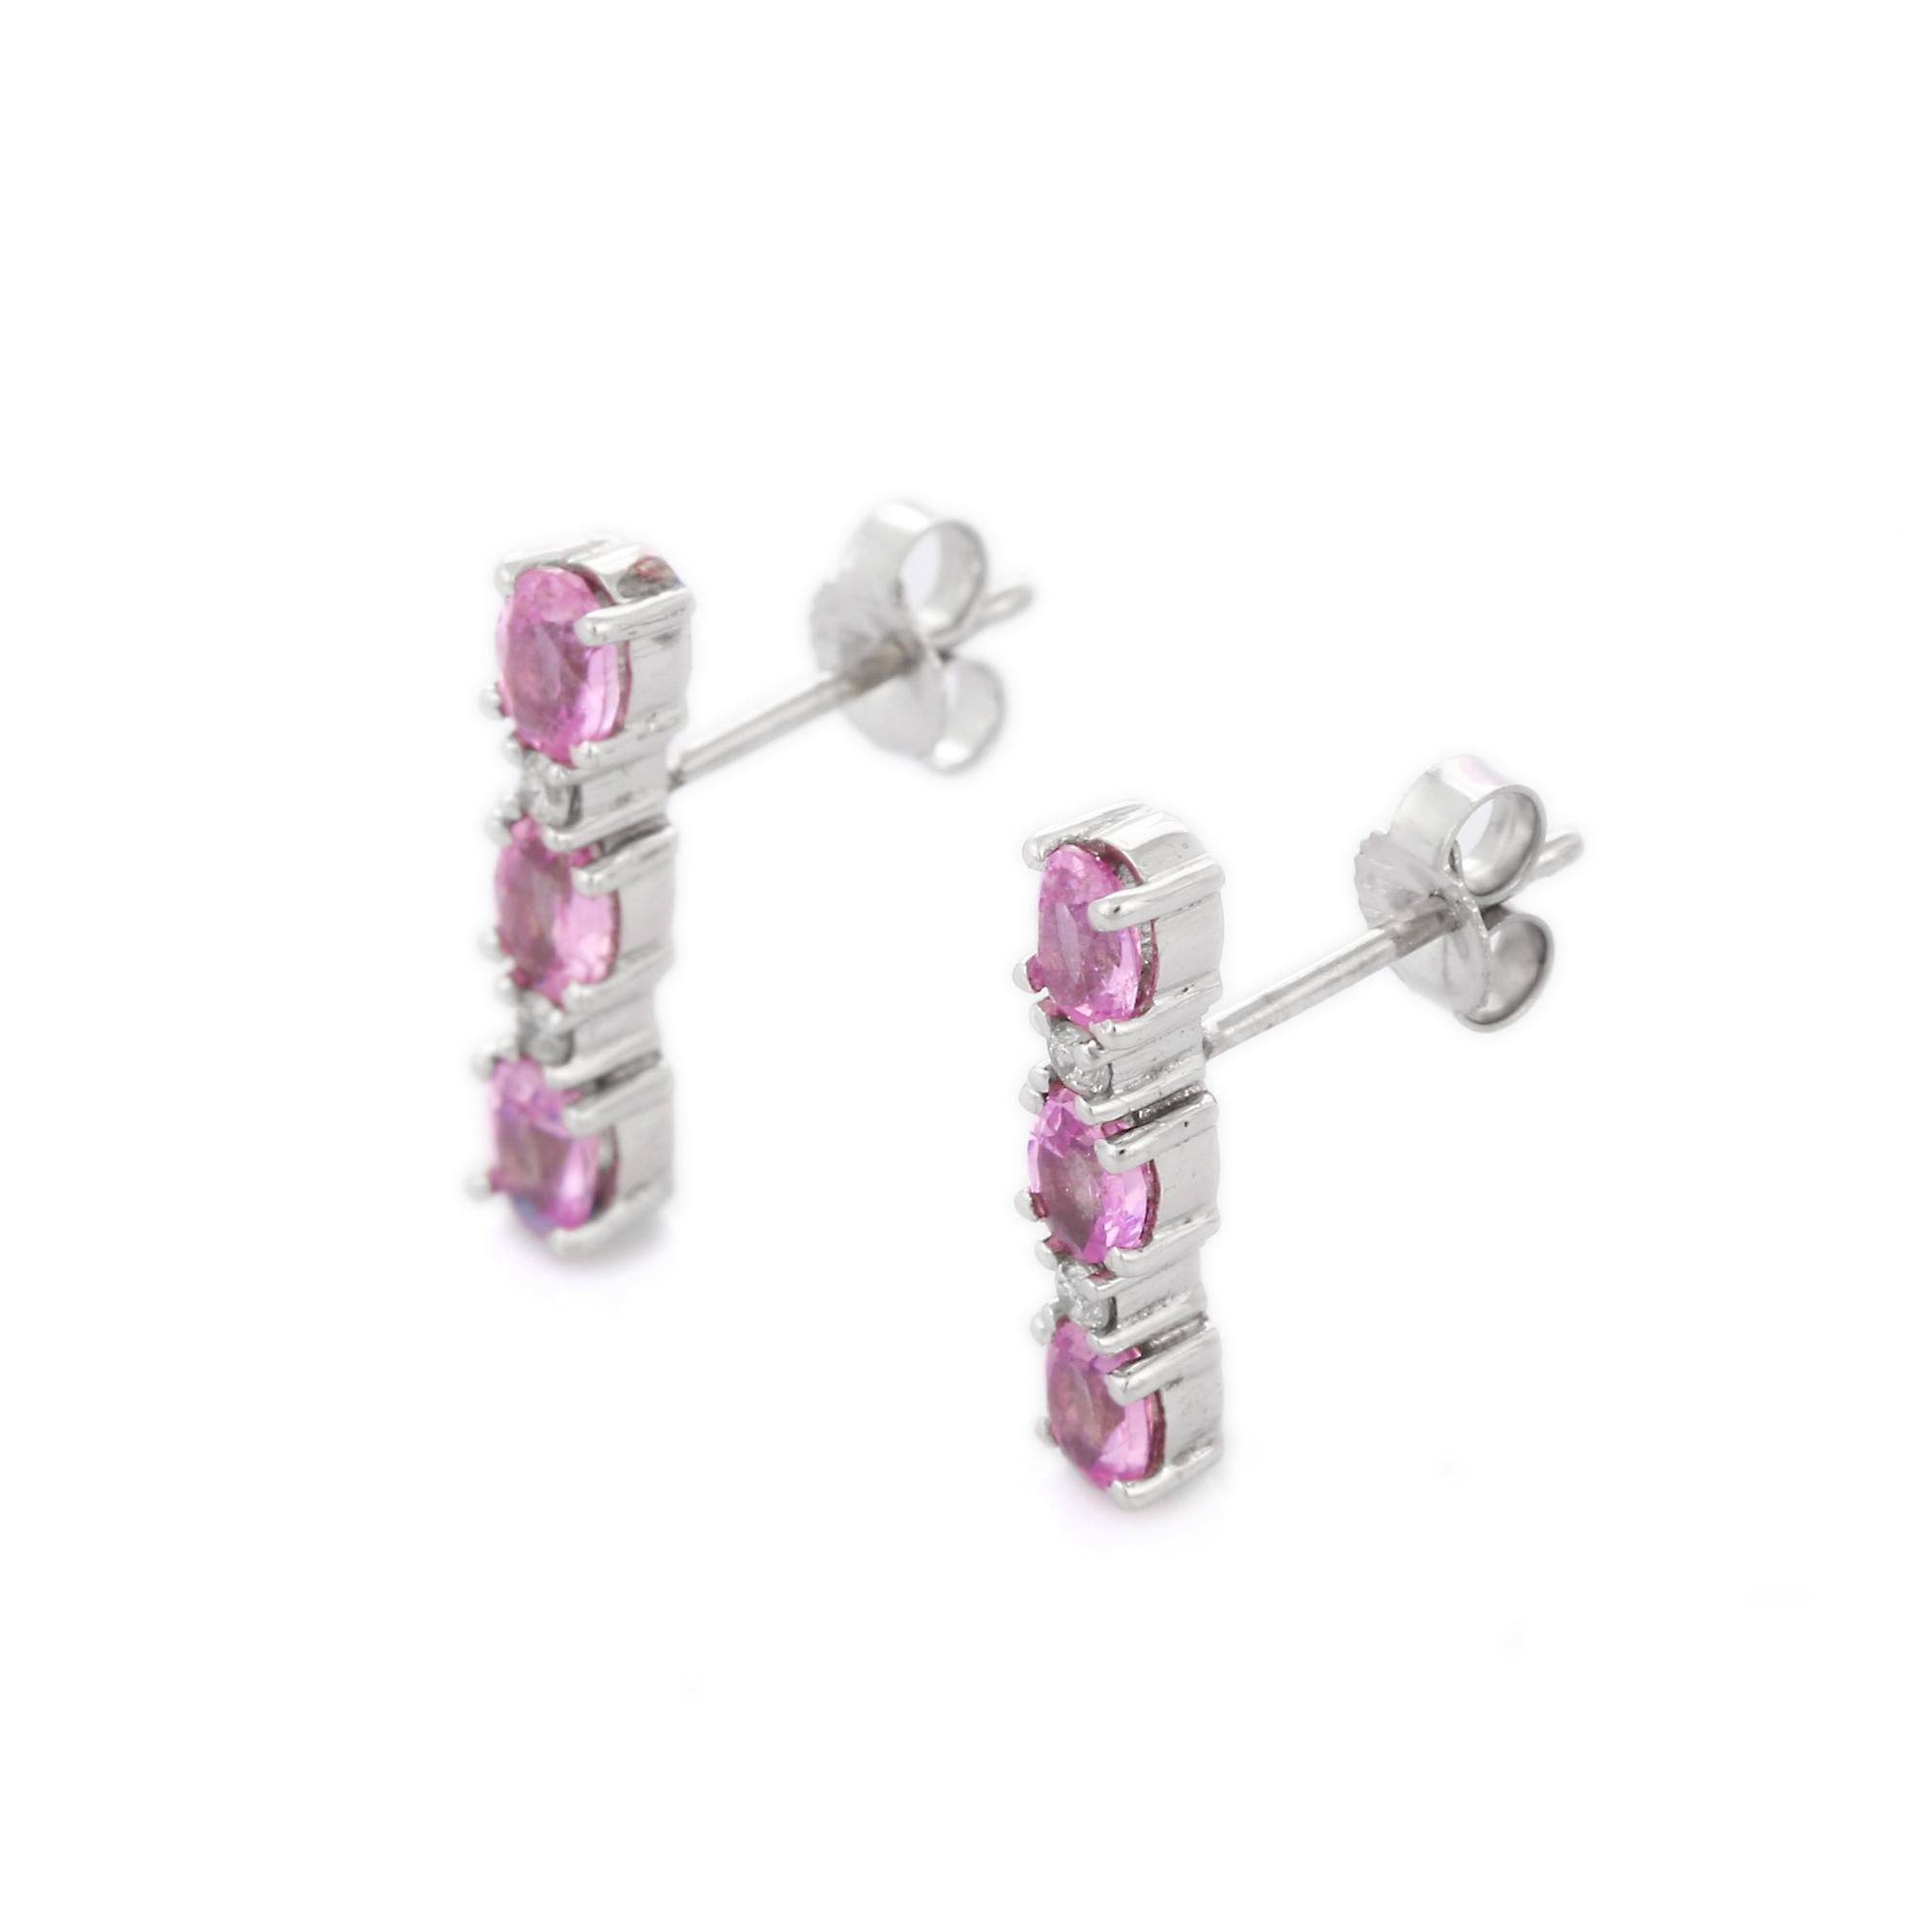 Pinke Saphir-Ohrringe, die mit Ihrem Look ein Statement setzen. Diese Ohrringe mit ovalem Schliff sorgen für einen funkelnden, luxuriösen Look.
Wenn Sie einen Hang zu einzigartigen Stilen haben, ist dieses Schmuckstück genau das Richtige für